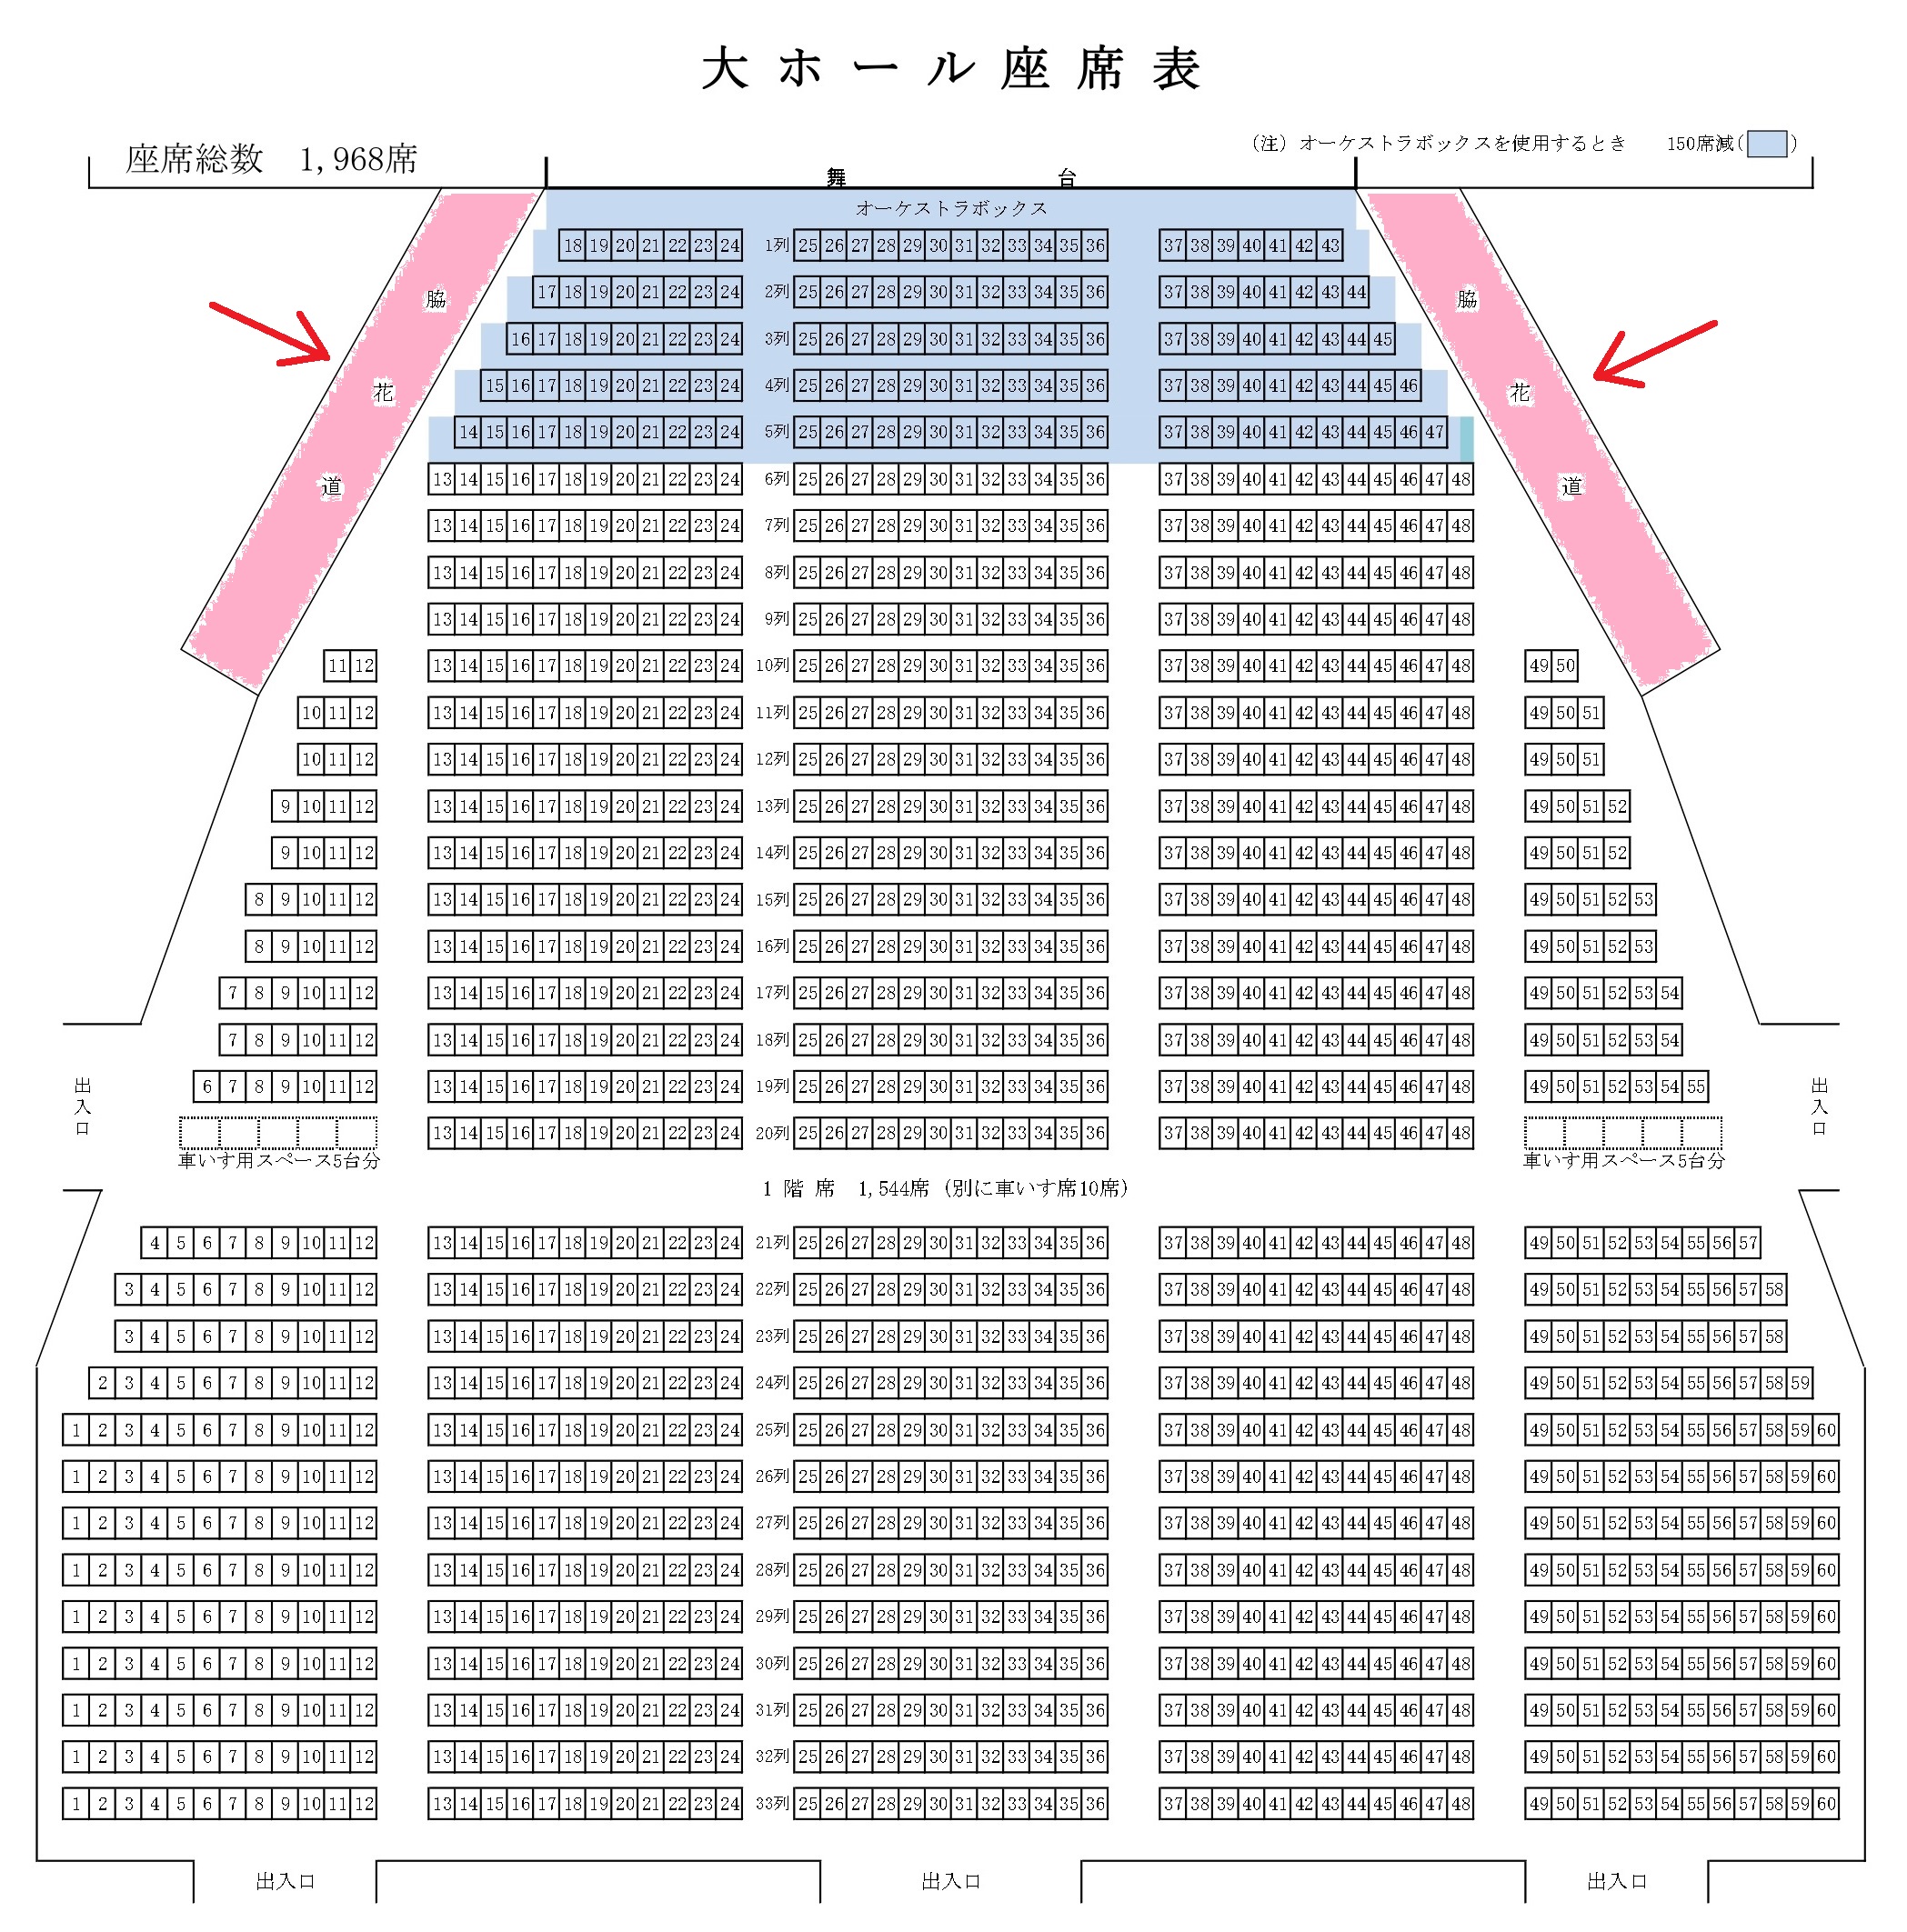 静岡市民文化会館大ホール座席表と見え方とキャパを徹底解説します 座席ウォッチャー